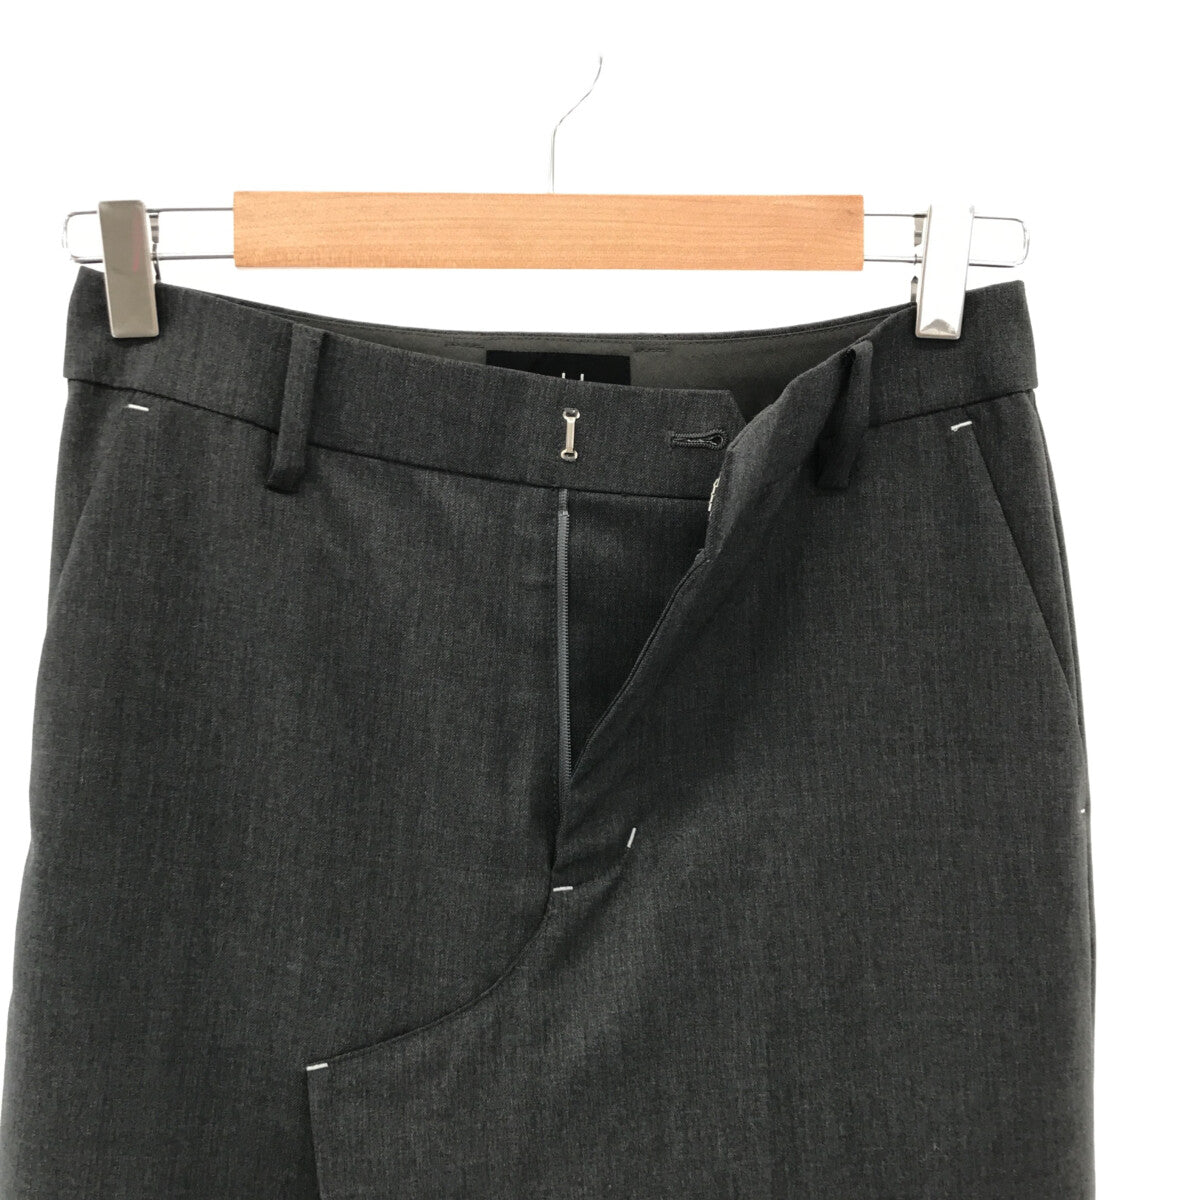 soduk / スドーク | skirt? trousers アシンメトリー スカート トラウザーパンツ | S |